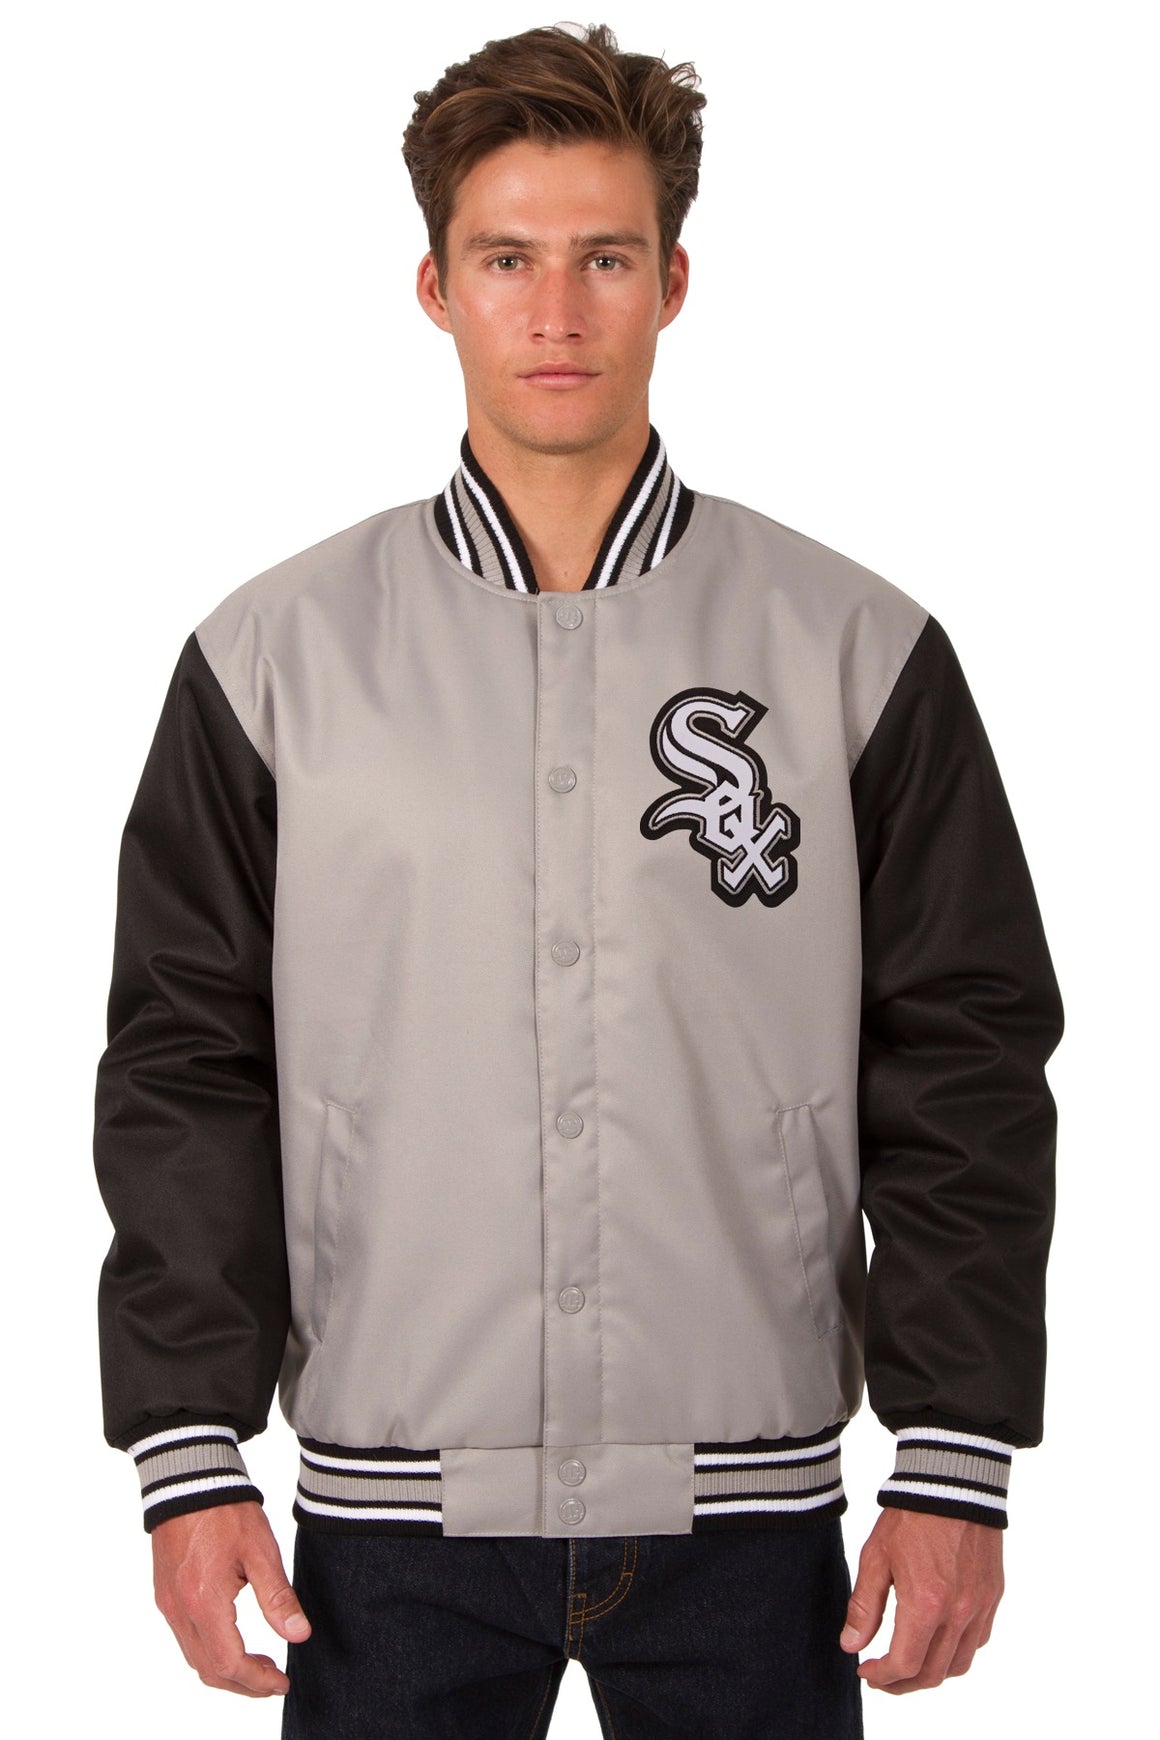 Chicago White Sox Poly Twill Varsity Jacket - Gray/Black | J.H. Sports ...